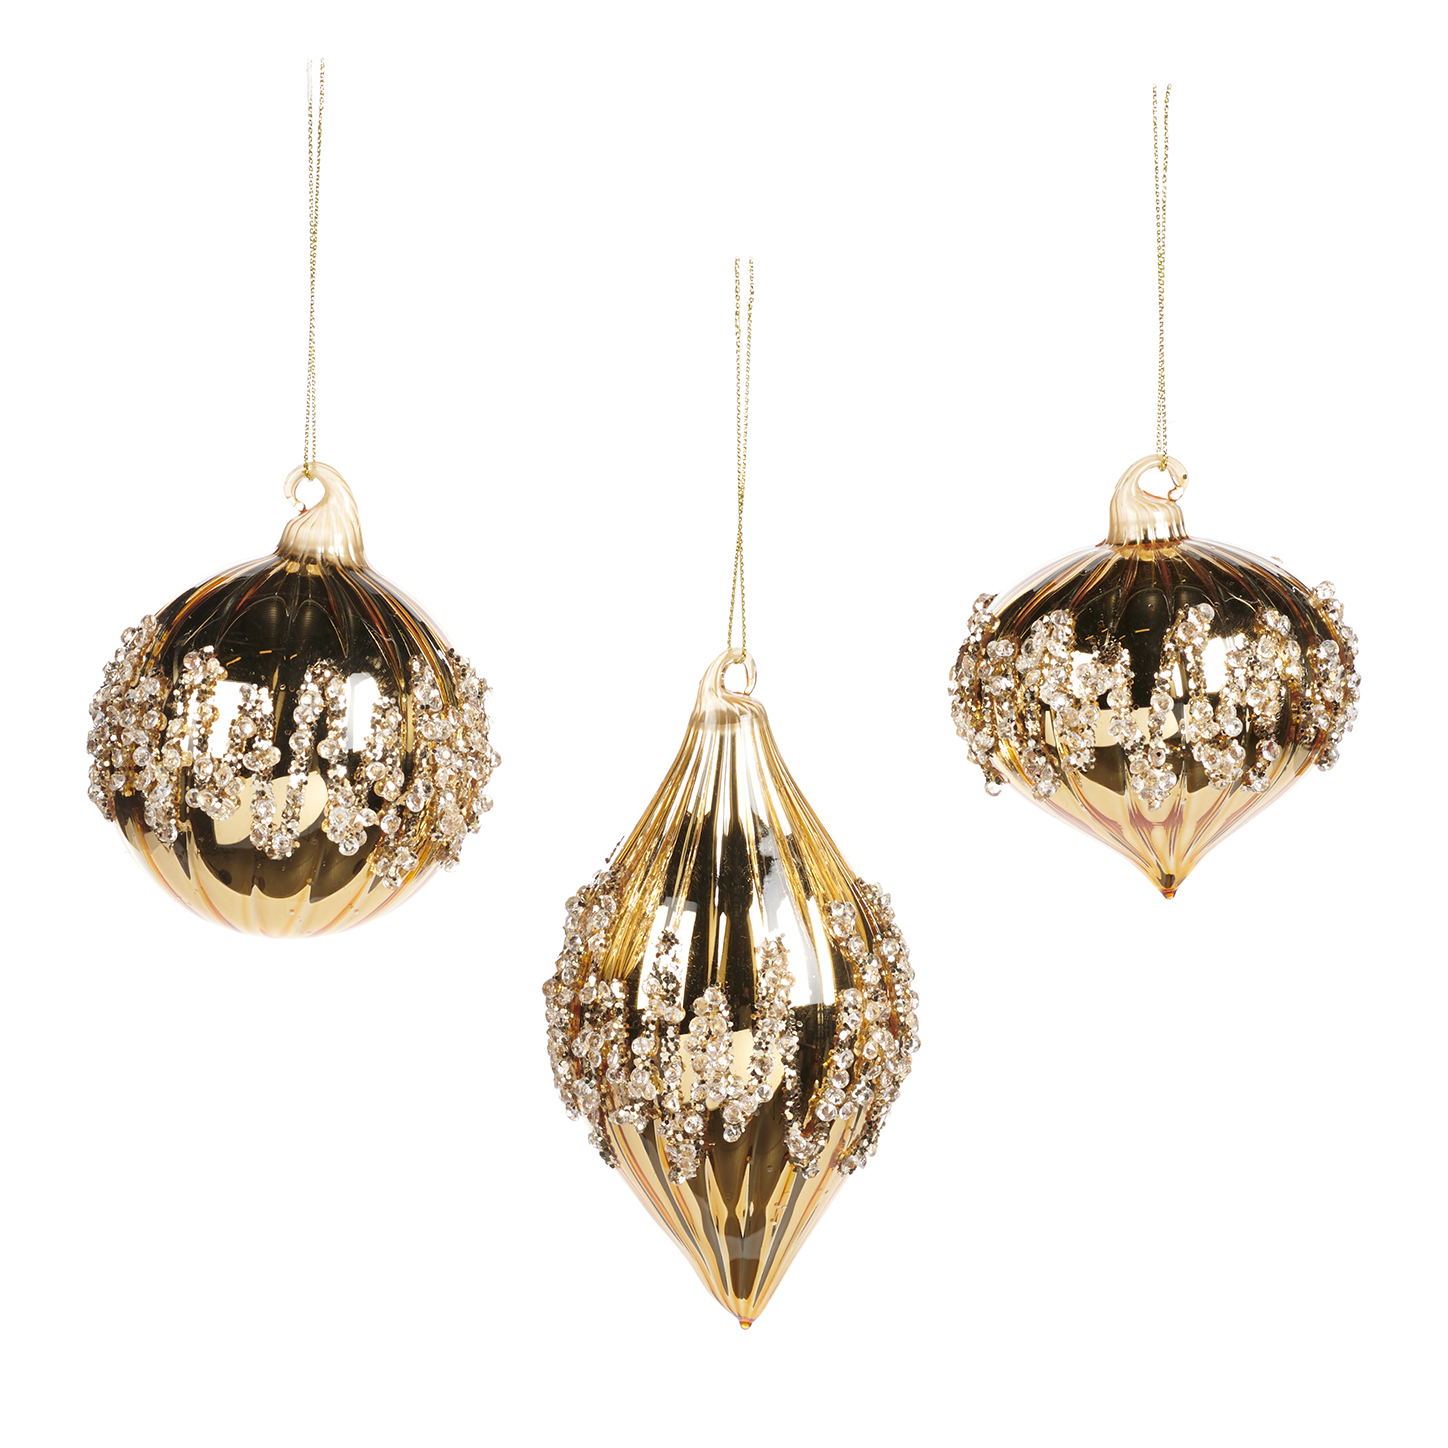 Pallina natalizia in vetro oro con decoro a rilievo - 3 modelli ass. - H.8 cm - Collezione 2022 - Goodwill